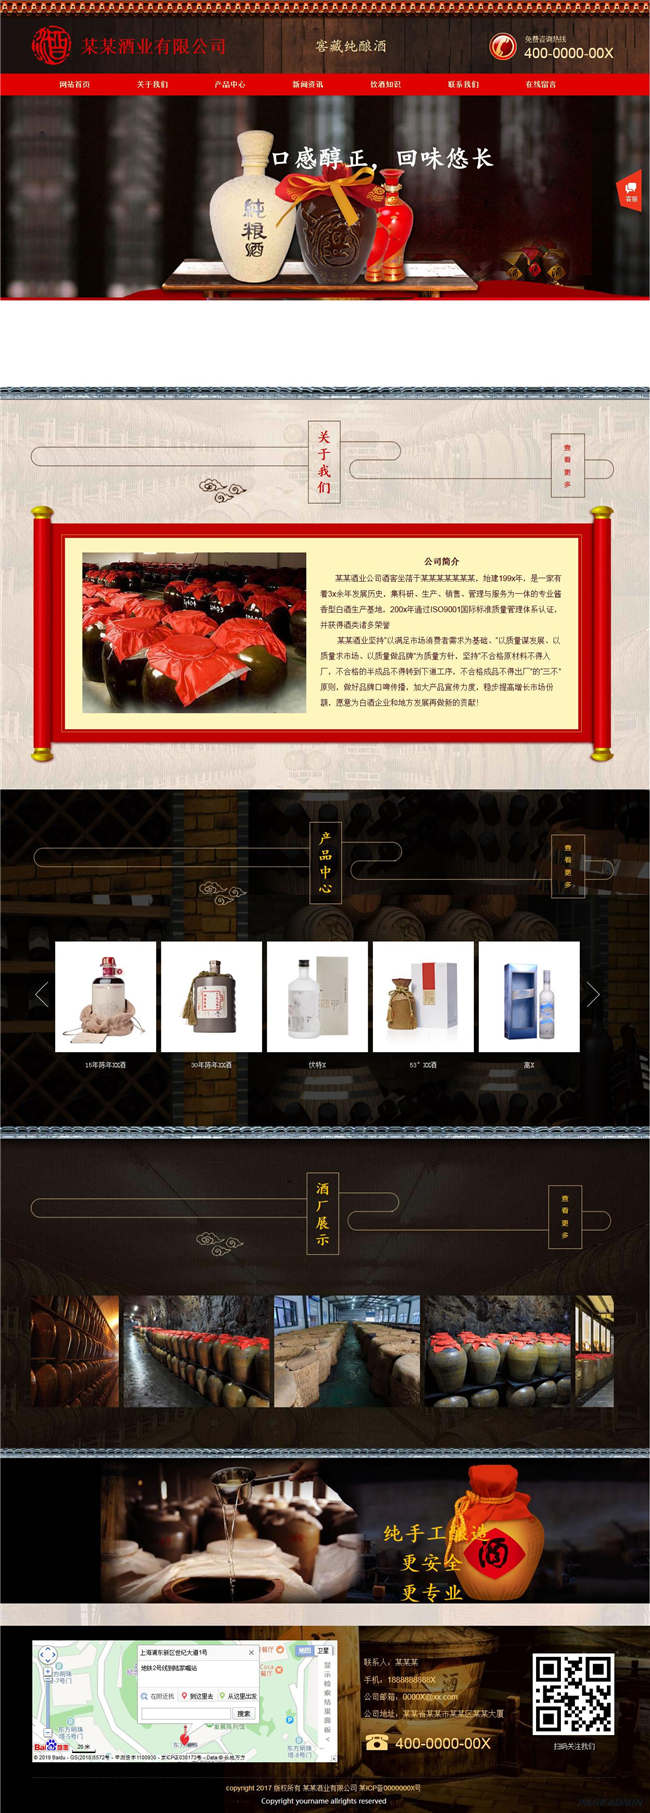 酒业公司食品饮料生鲜茶酒白酒酿造网站Wordpress模板(带手机站)预览图